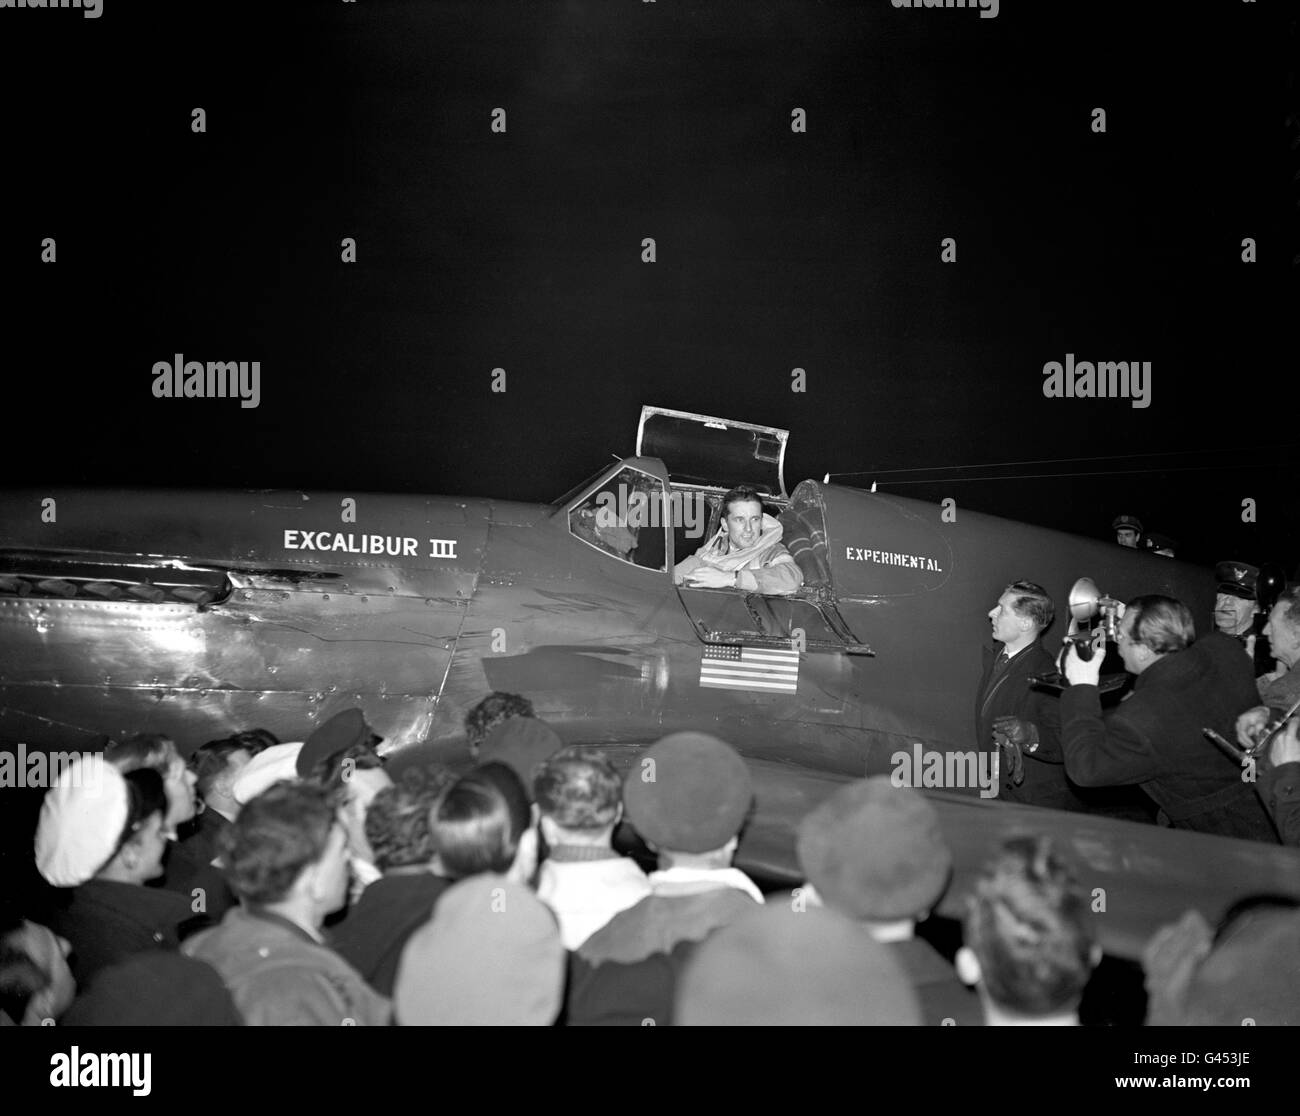 Il capitano Charles Blair è accolto dai media dell'aeroporto di Heathrow, Londra, dopo aver superato il record per il volo transatlantico più veloce. Ha volato da New York a Londra in 7 ore, 48 minuti a bordo del suo combattente convertito Mustang, Excalibur III Foto Stock